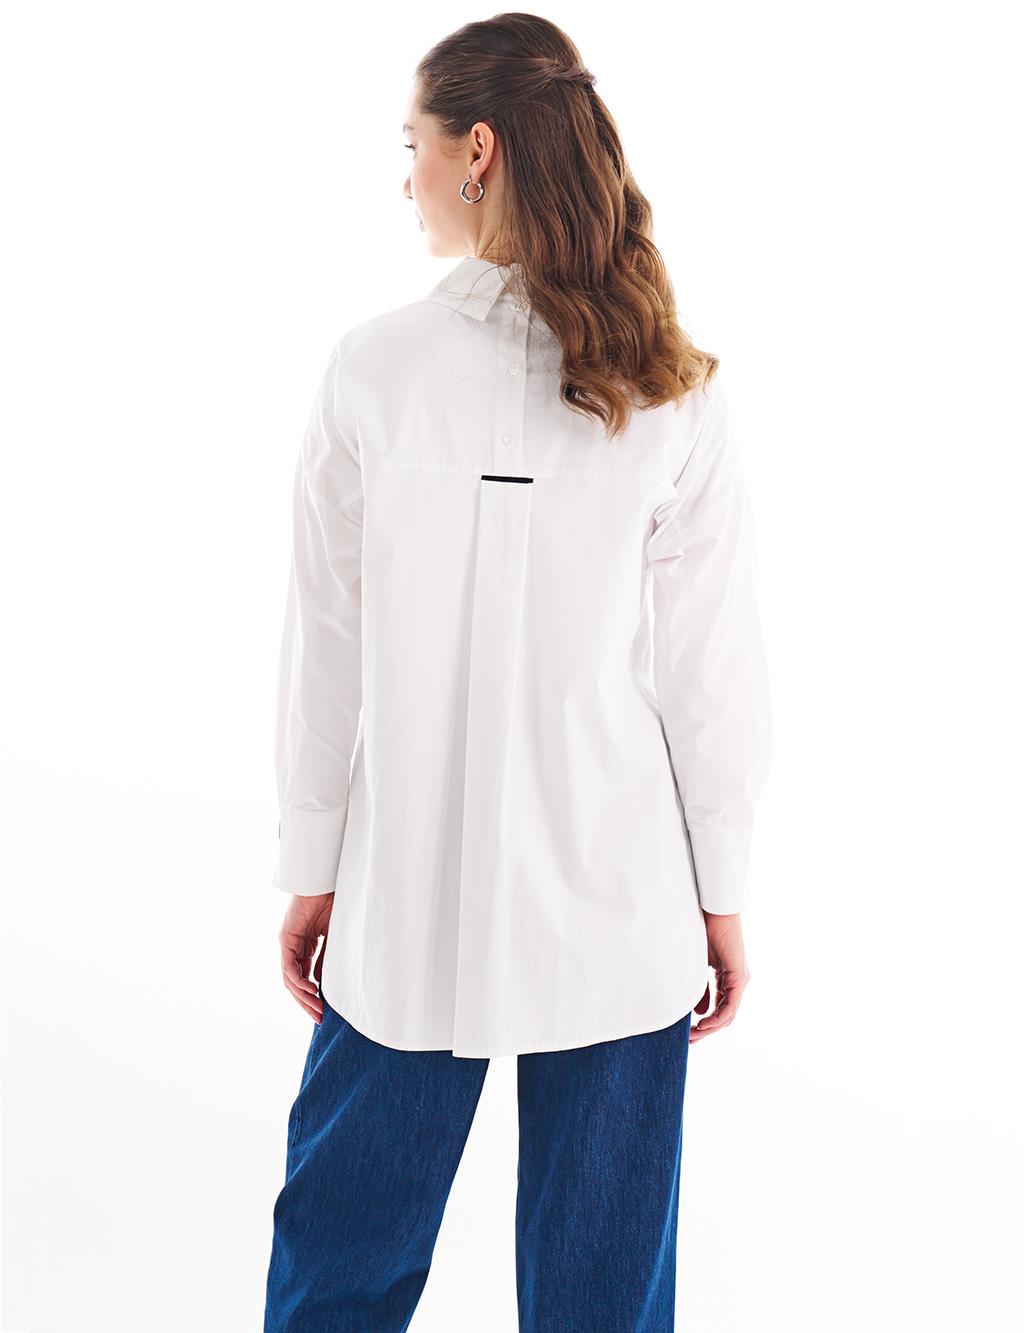 Aksesuar Detaylı Gömlek Yaka Tunik Optik Beyaz